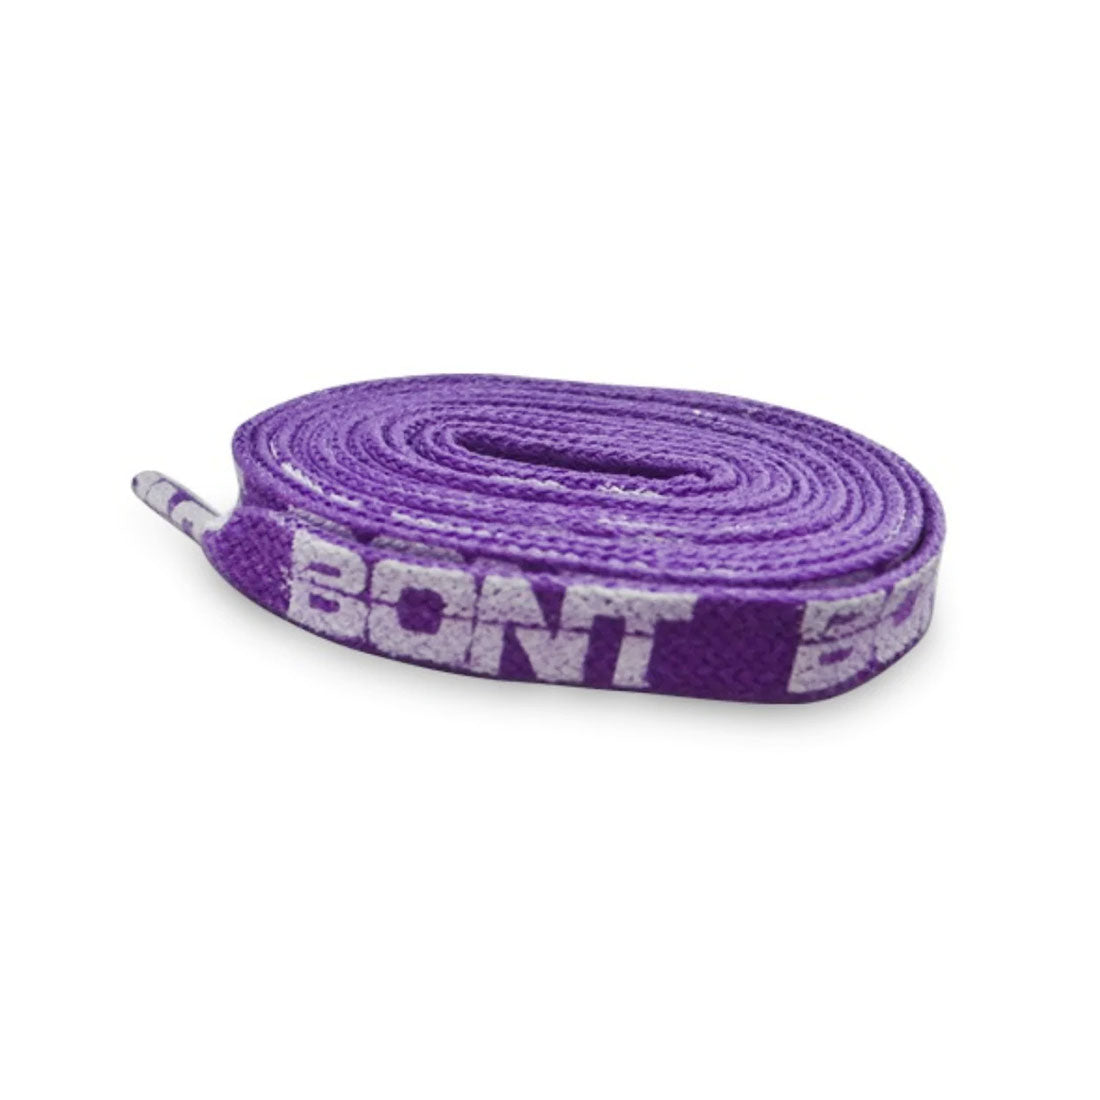 BONT Skate 10mm Laces - 120cm / 47in - Purple Laces